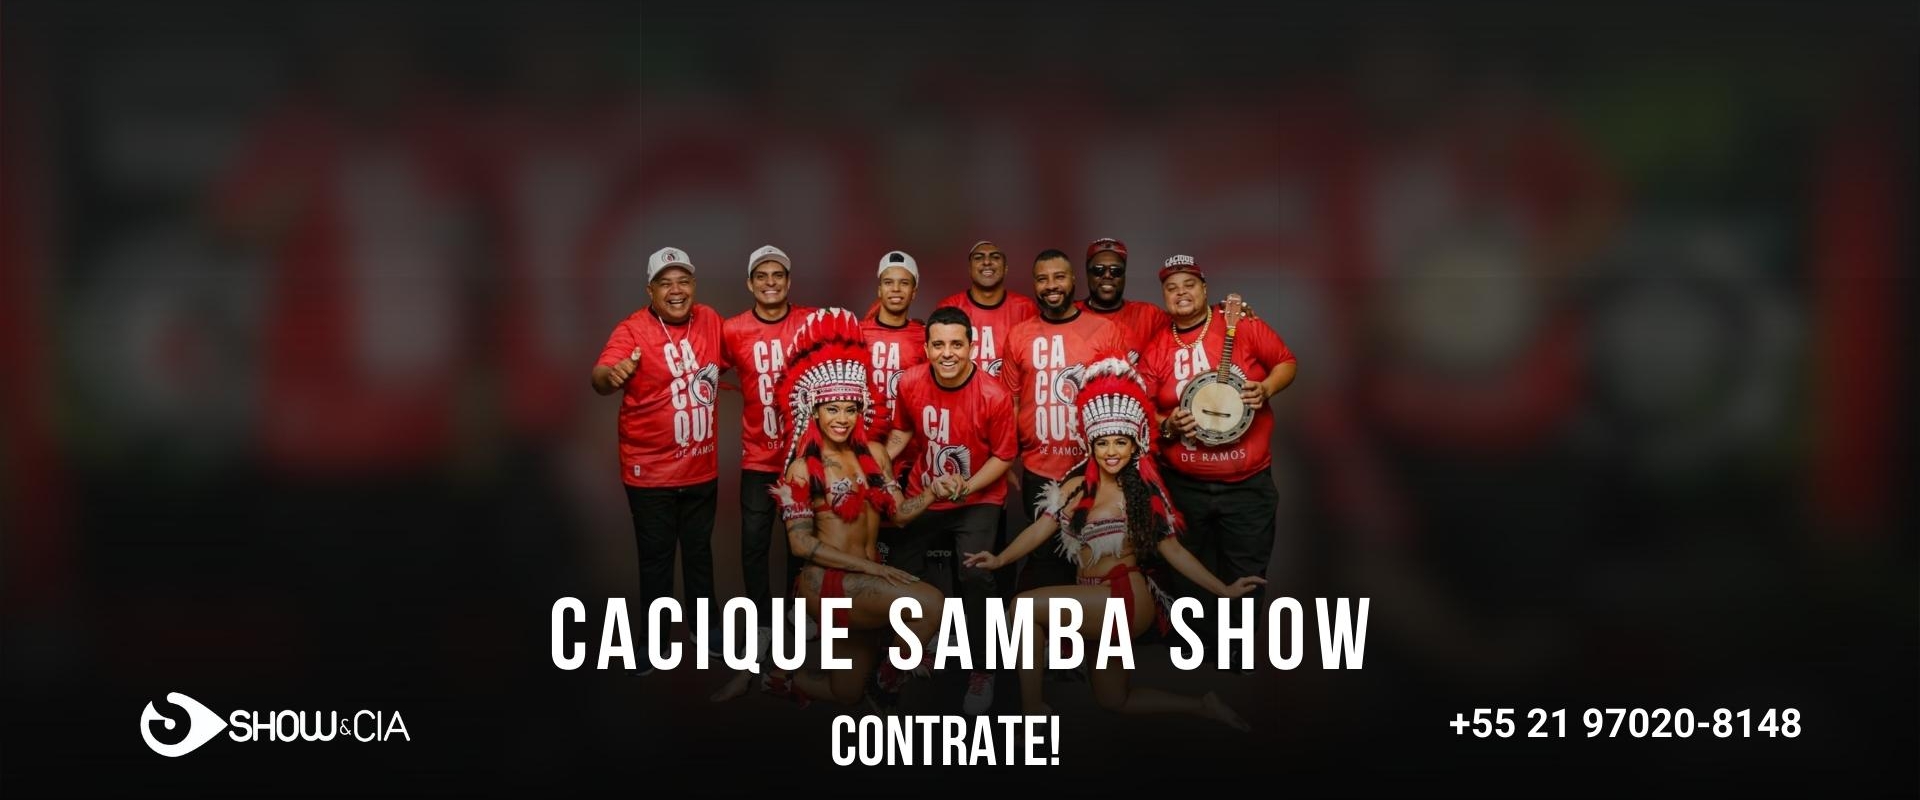 CACIQUE SAMBA SHOW